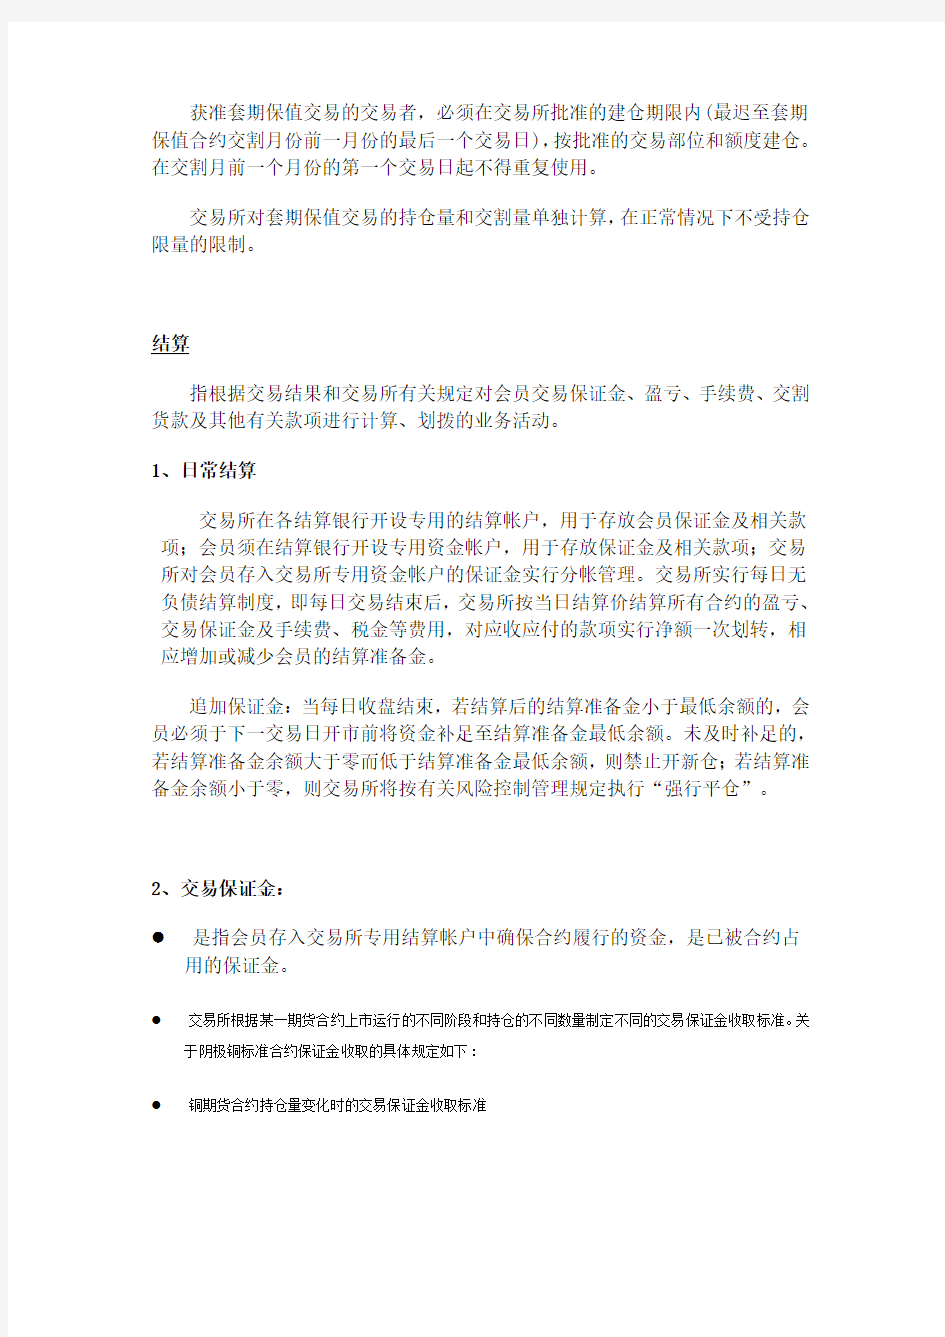 上海期货交易所业务细则及有关规定